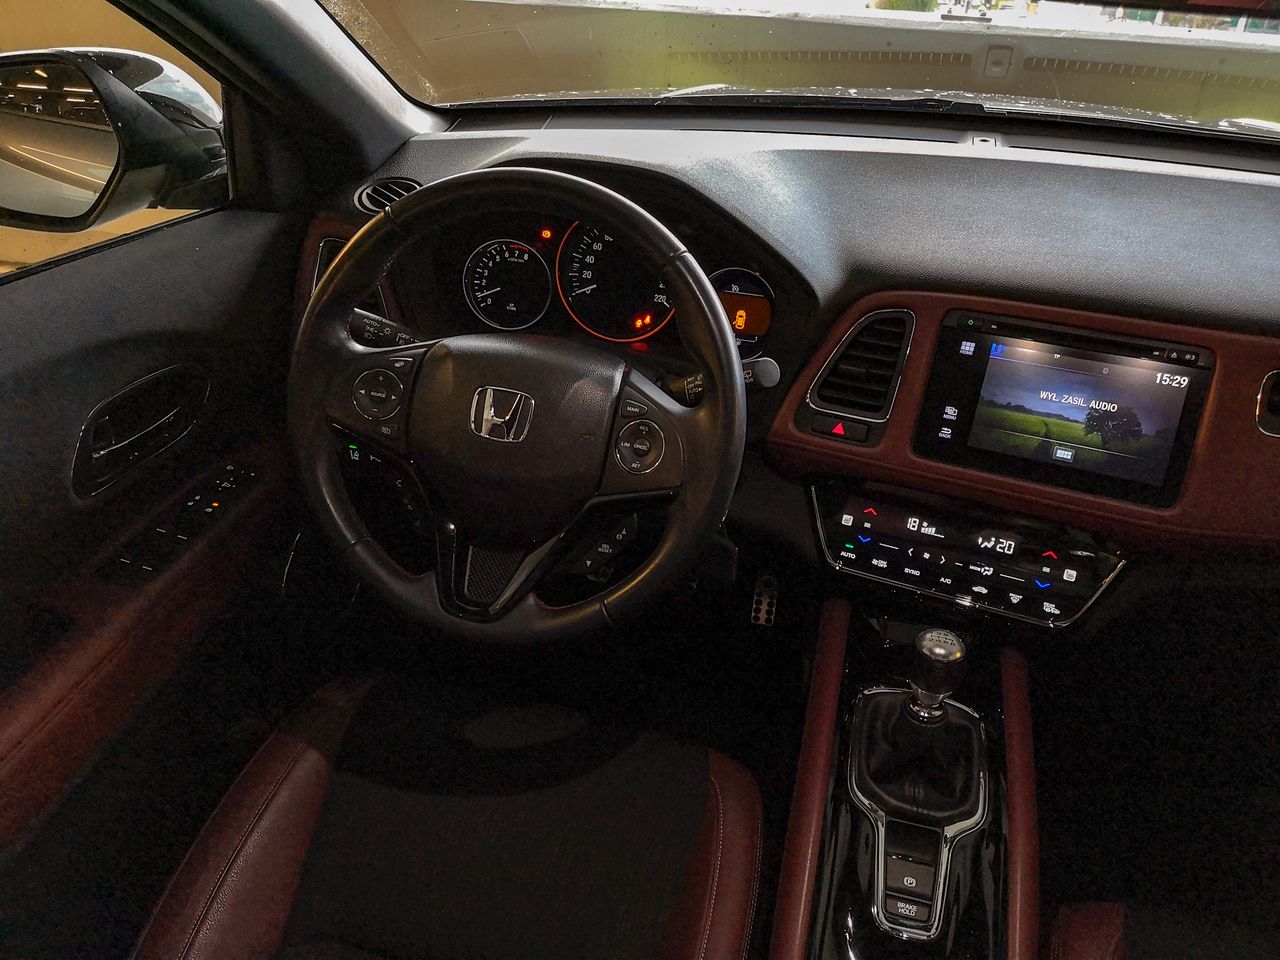 Honda HR-V nie imponuje nowoczesnością, ale odwdzięcza się solidnością i prostotą działania